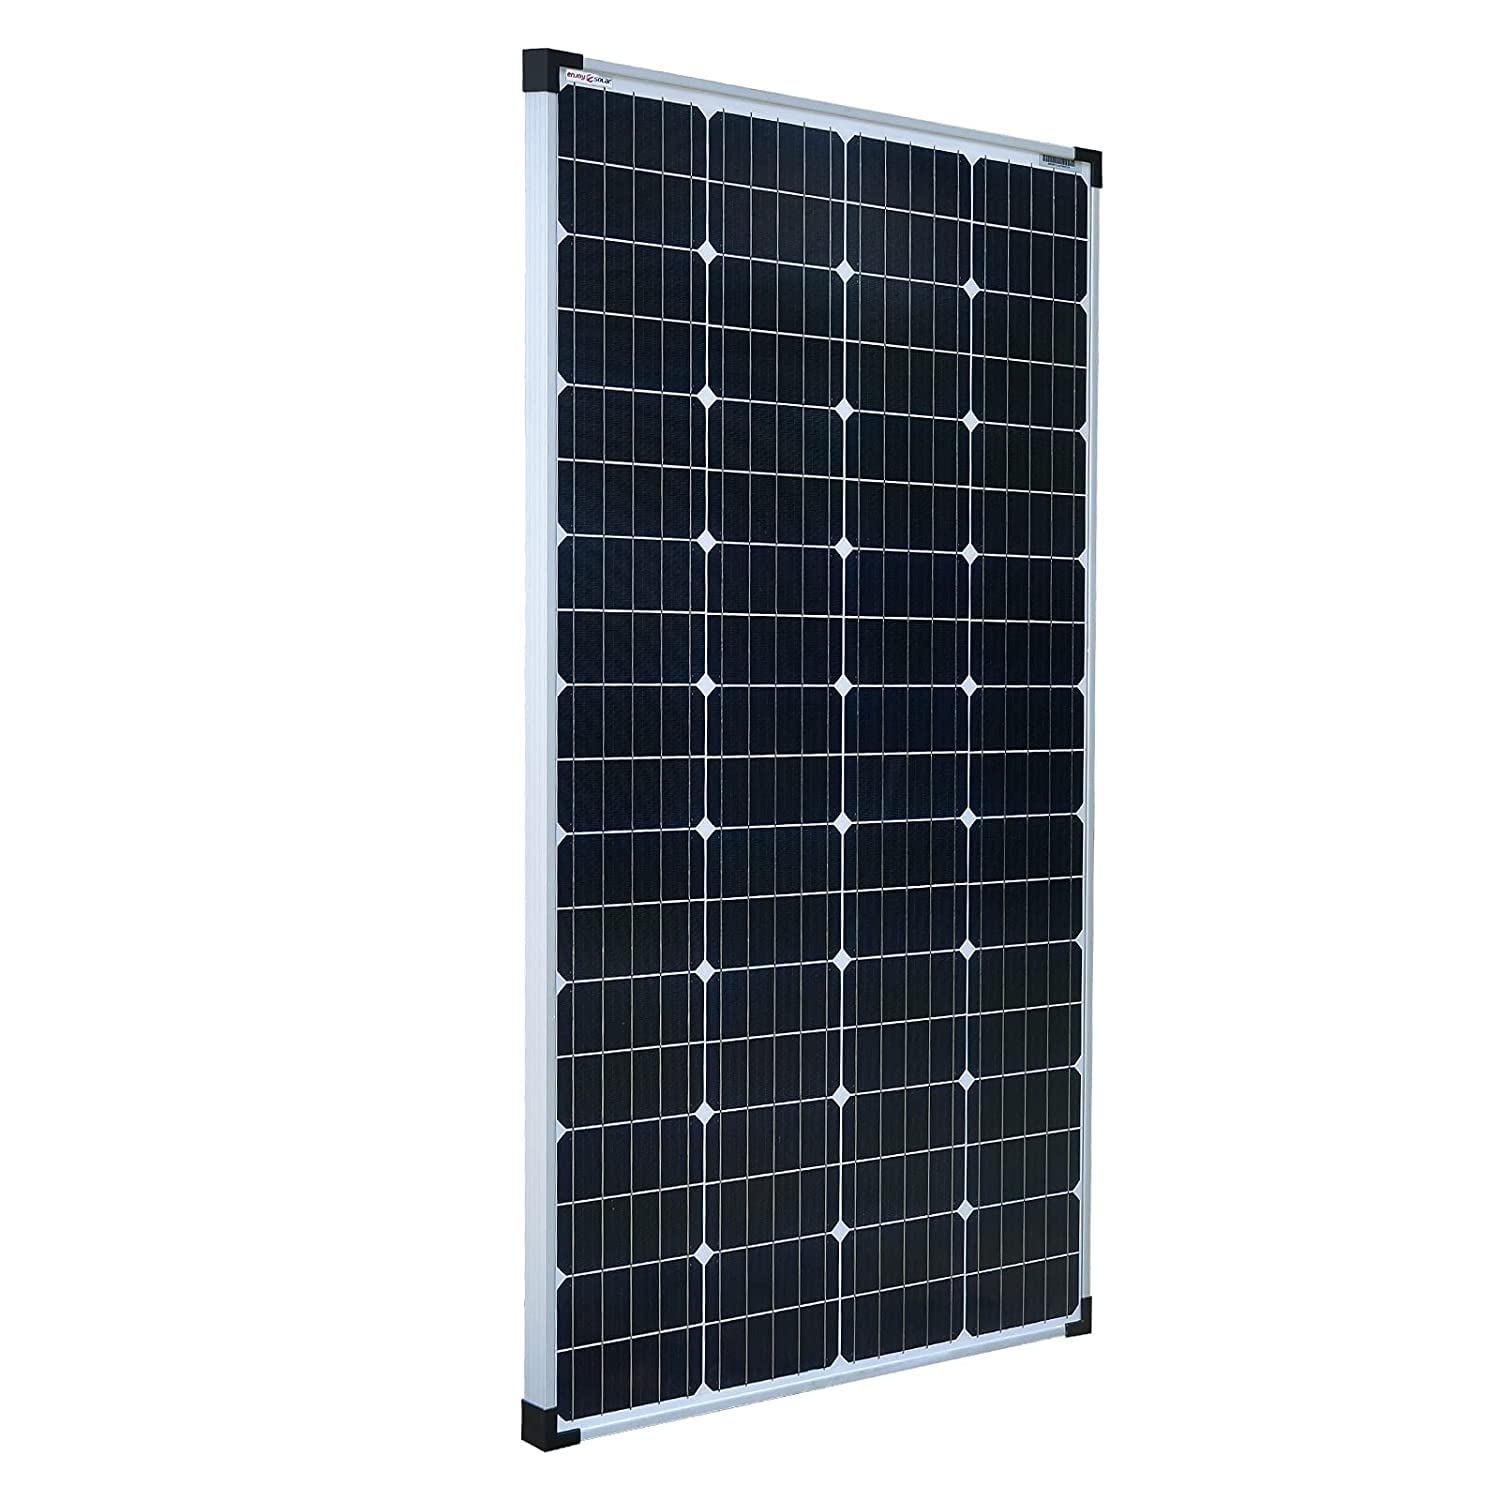 Pannello Solare Fotovoltaico - Da 50W a 150W Watt